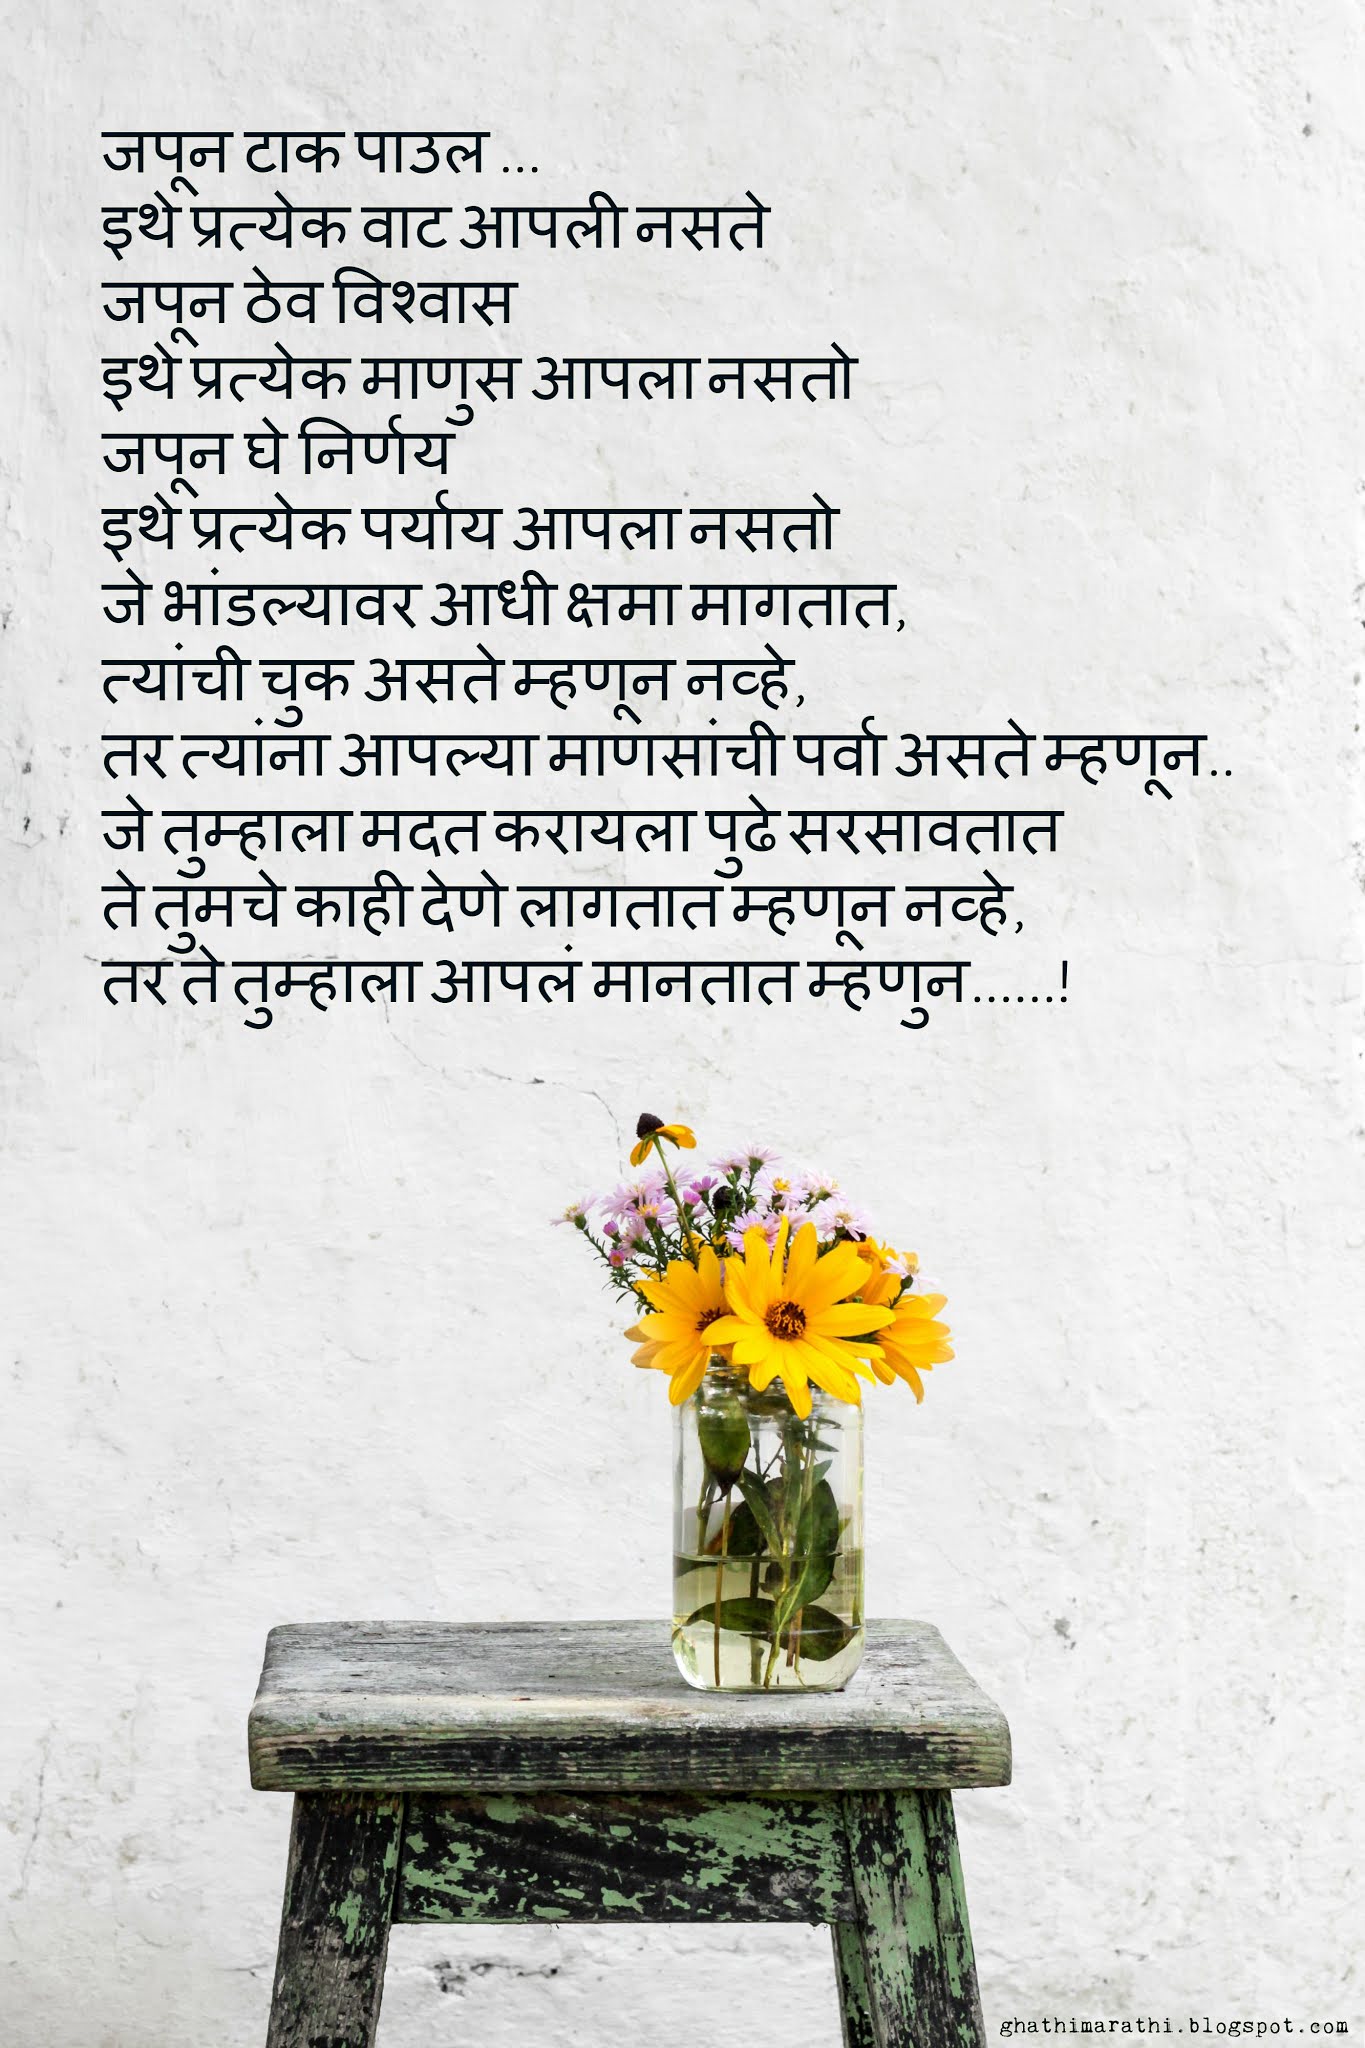 gratitude essay in marathi